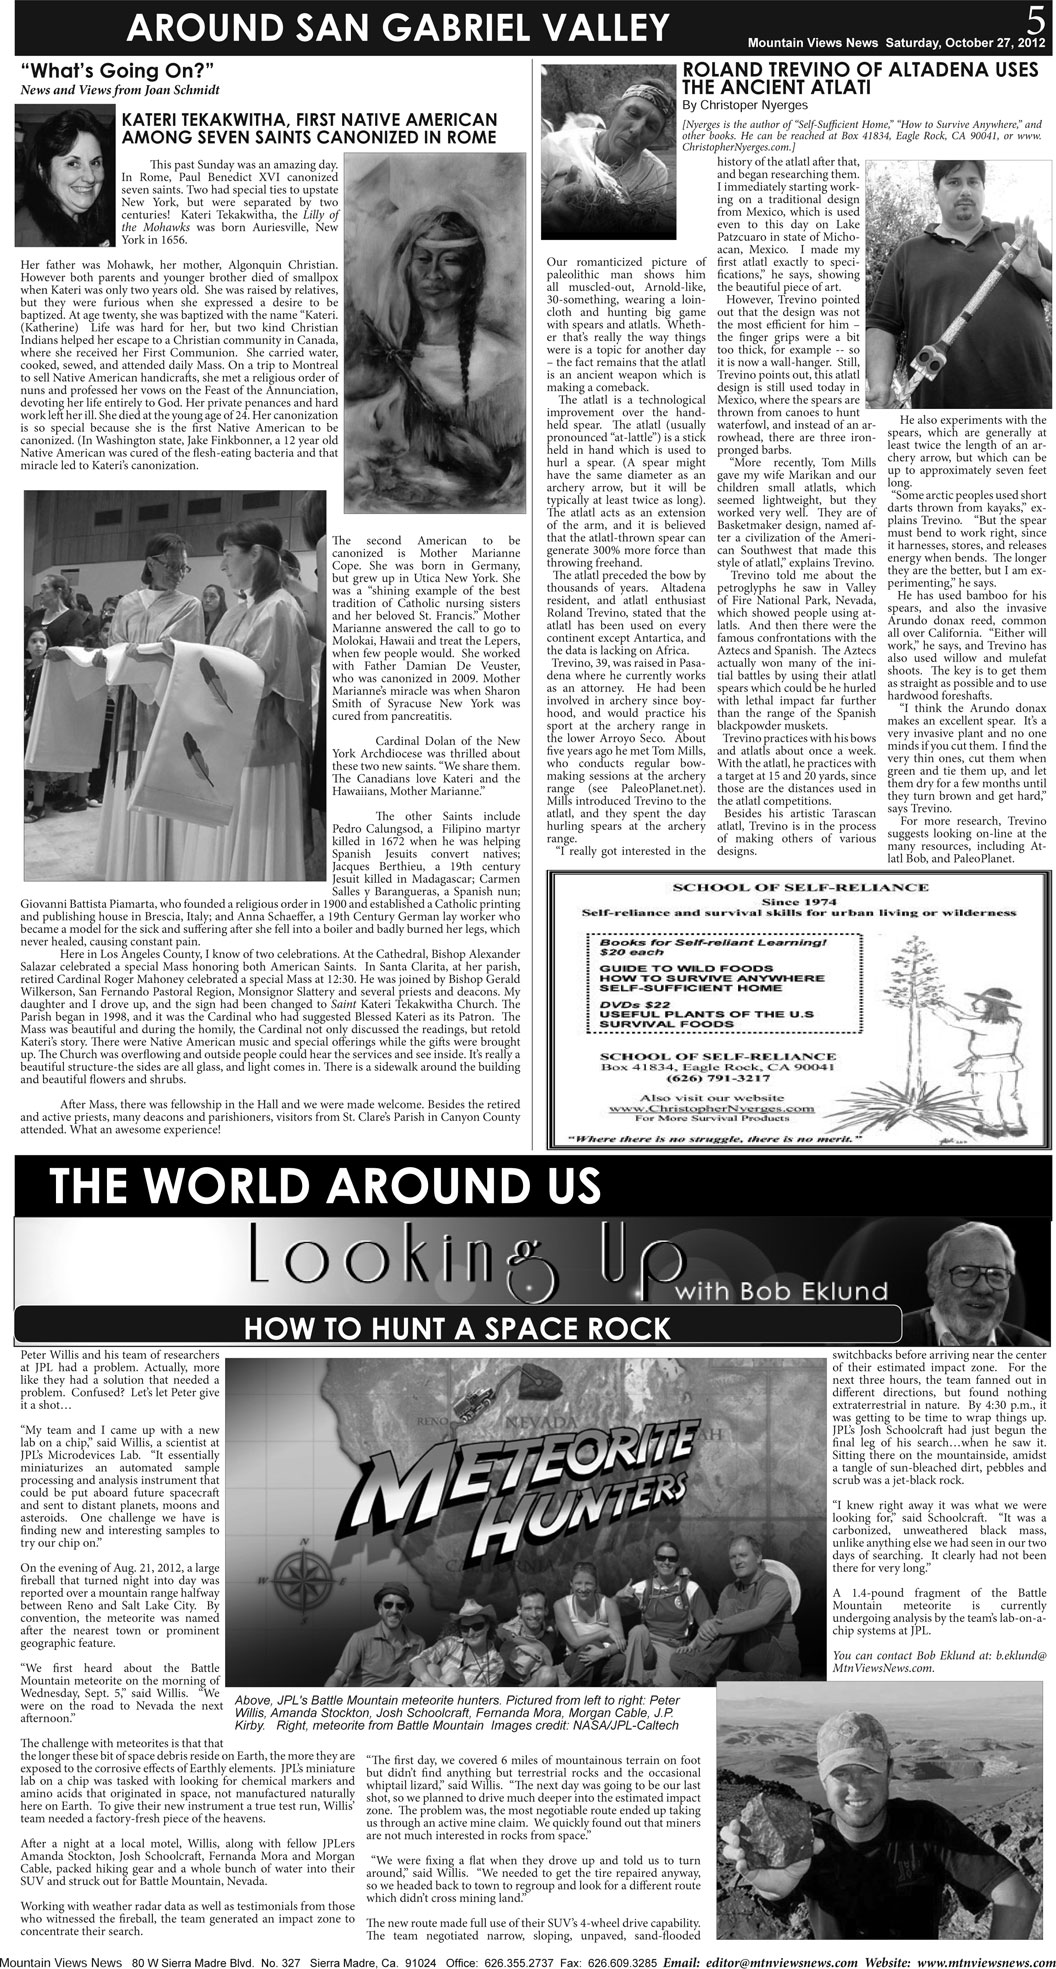 MVNews this week:  Page 5